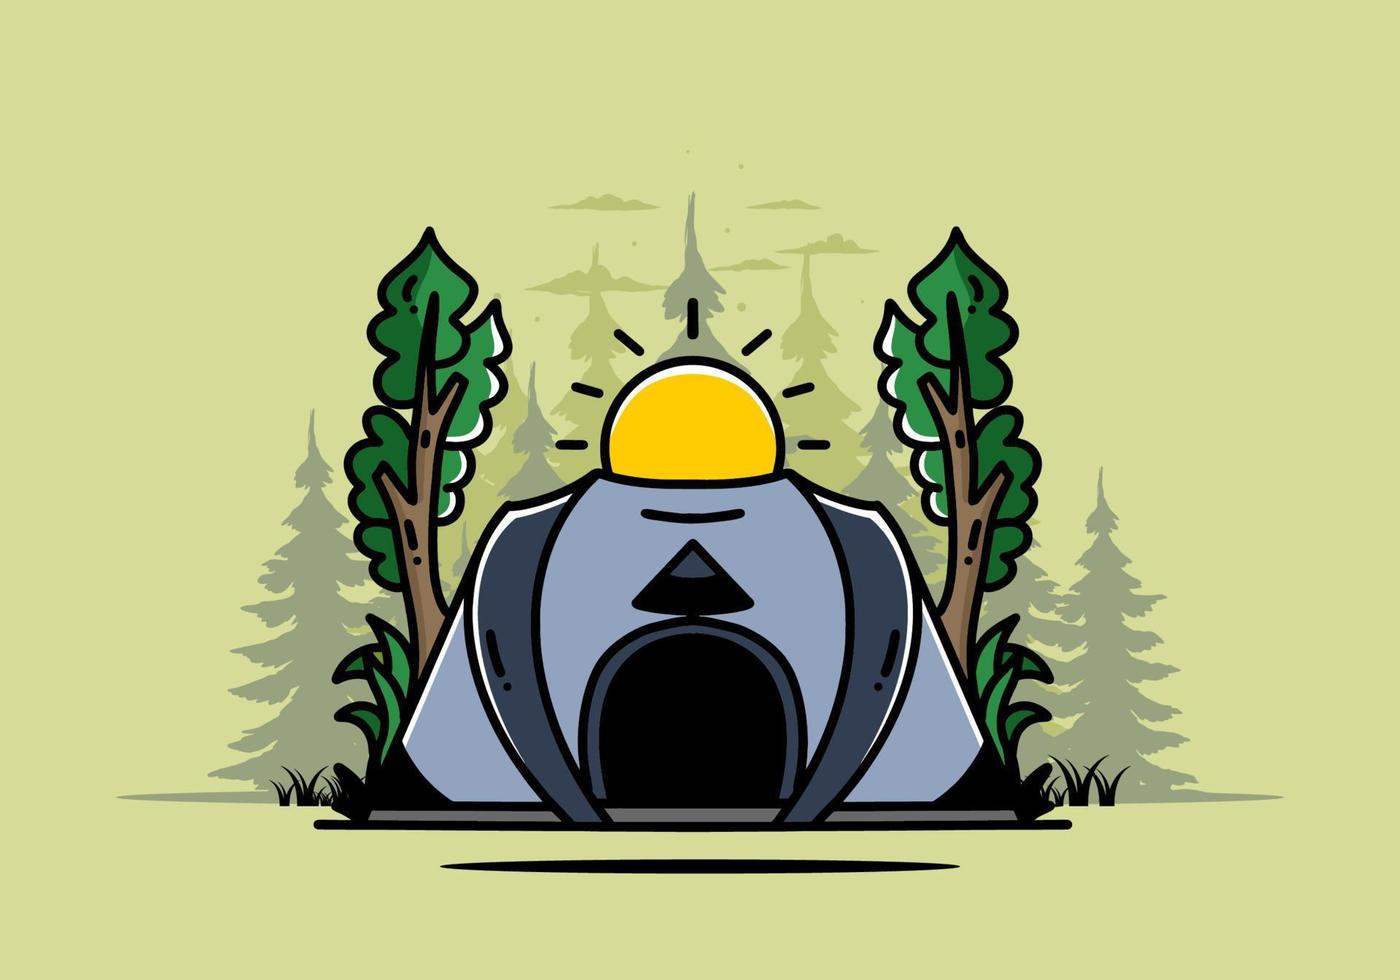 grande tenda pop-up per il design del distintivo dell'illustrazione del campeggio vettore